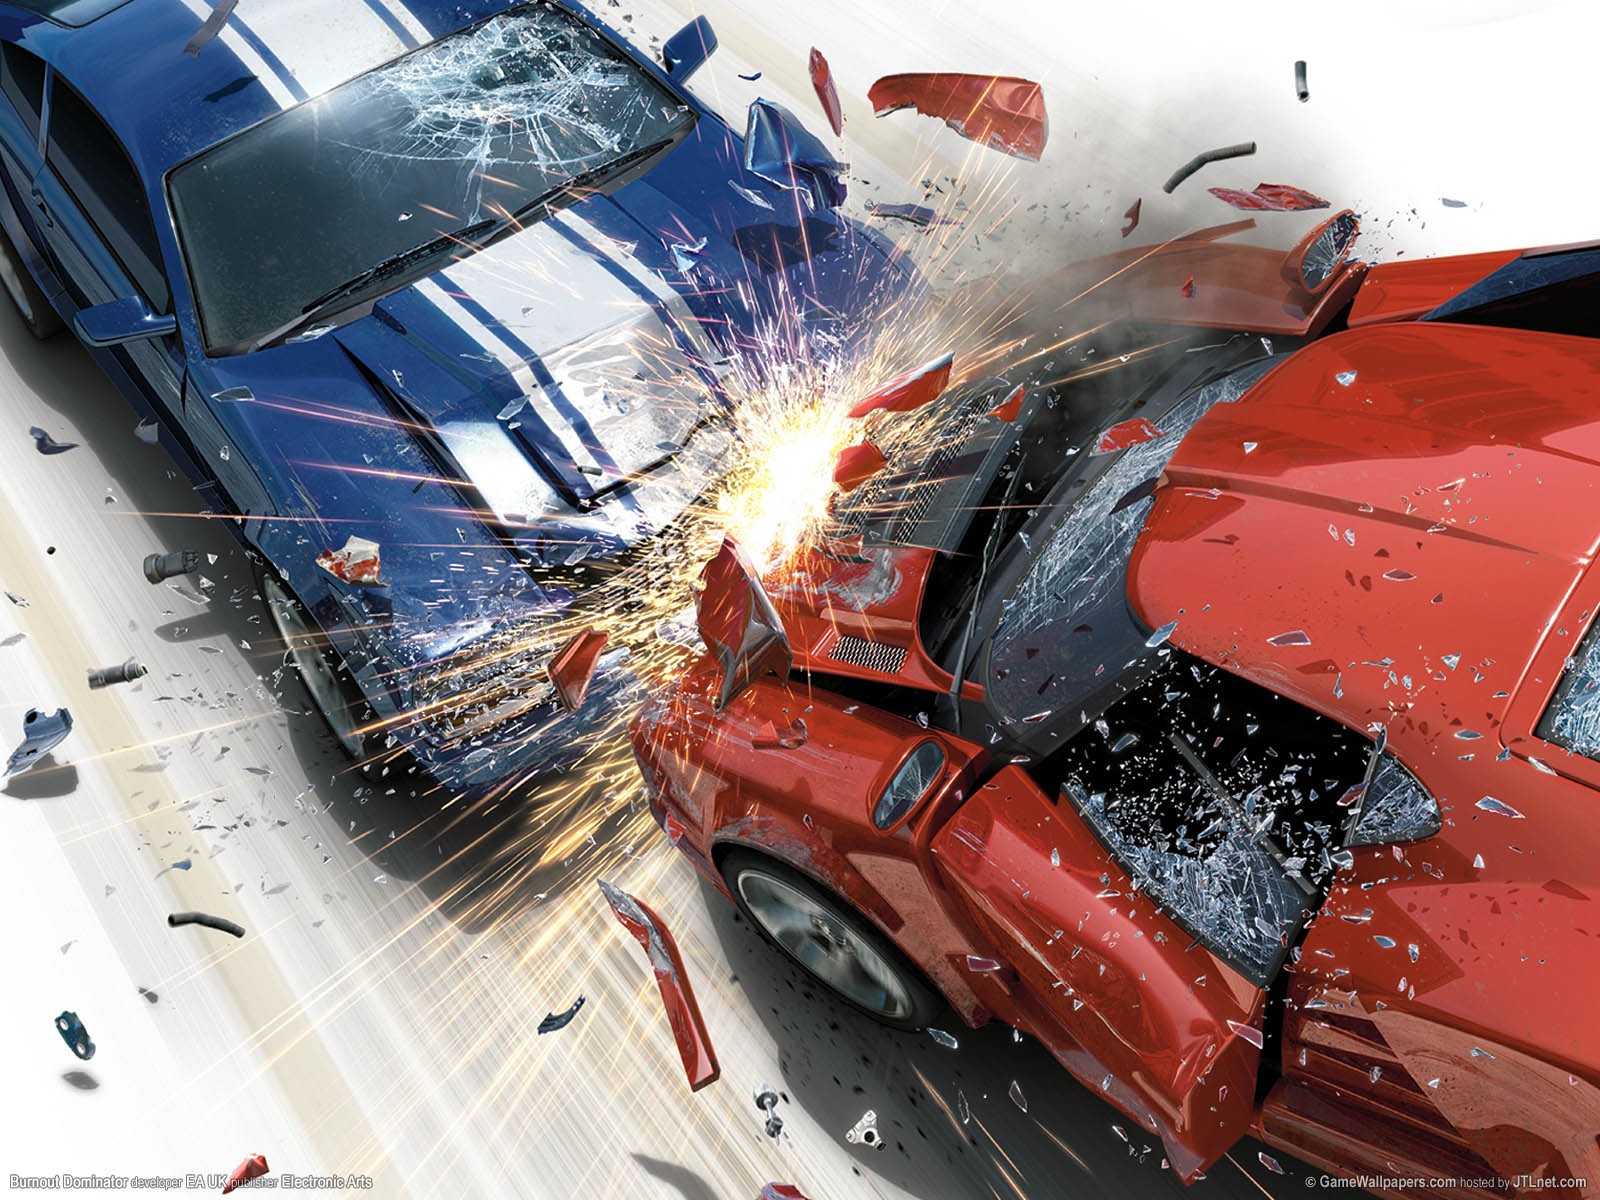 Burnout Video Game Crash Lamborghini Muscle Cars Destruction Video Games 1600x1200